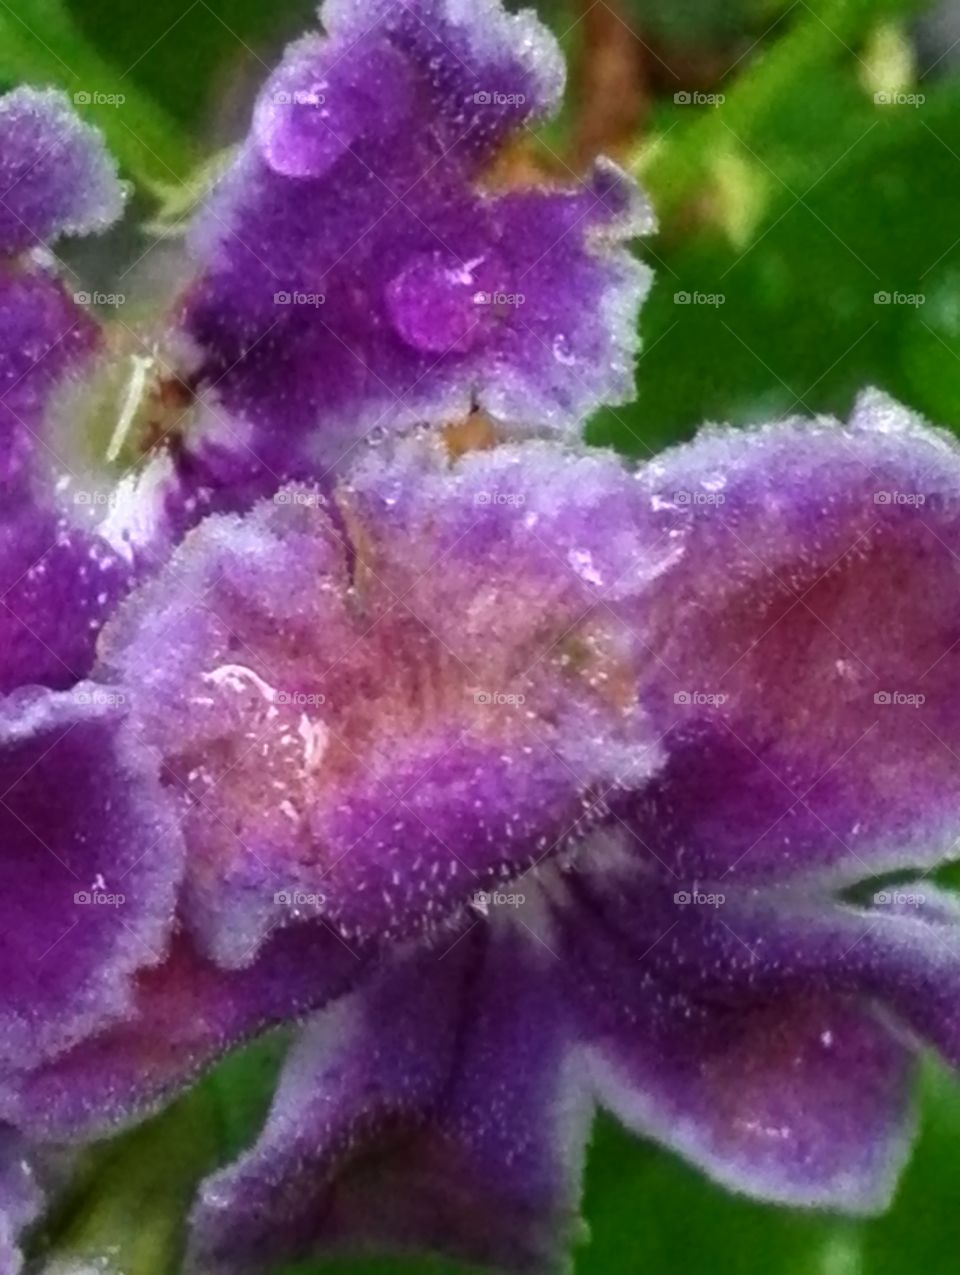 Wet duranta flower